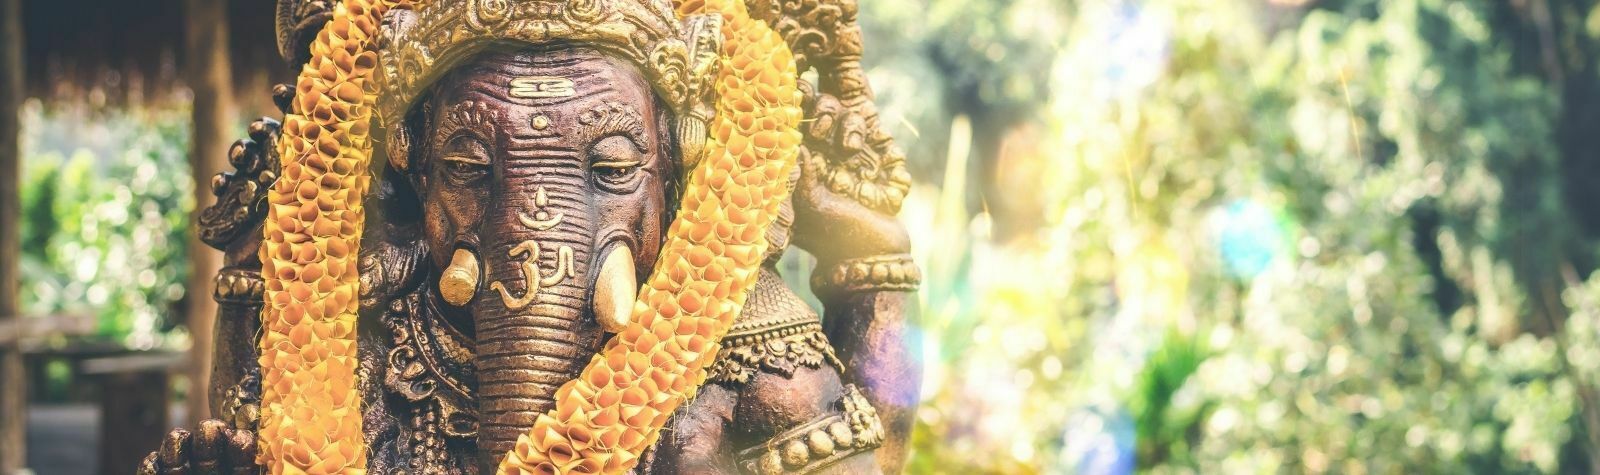 Bid adieu to Lord Ganesh, not the environment